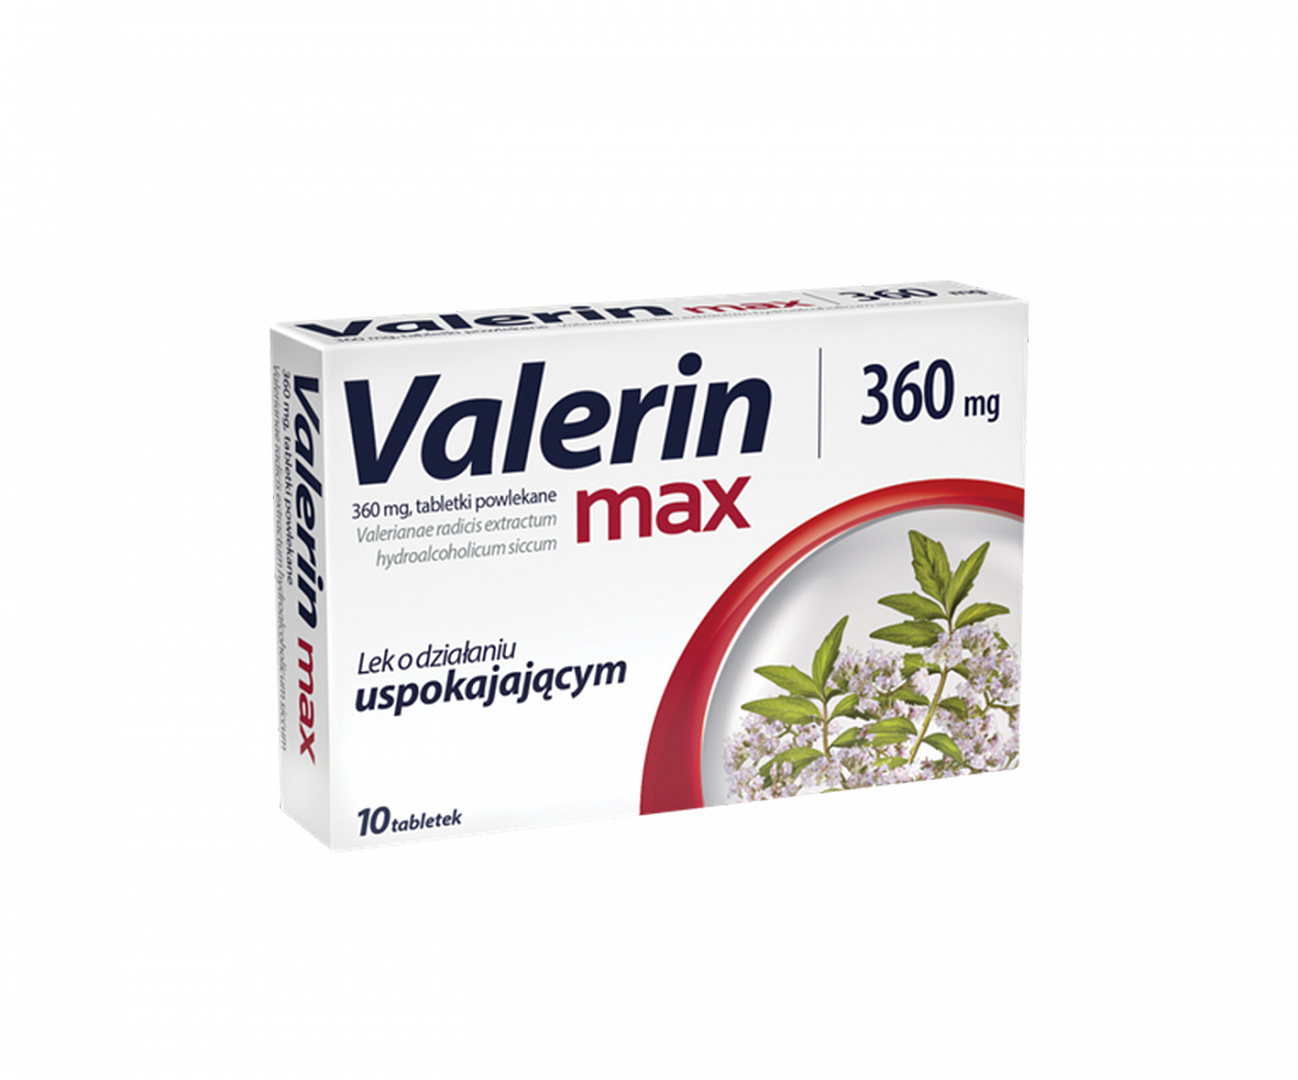 Aflofarm, Valerin Max, Pillole antistress con effetto calmante